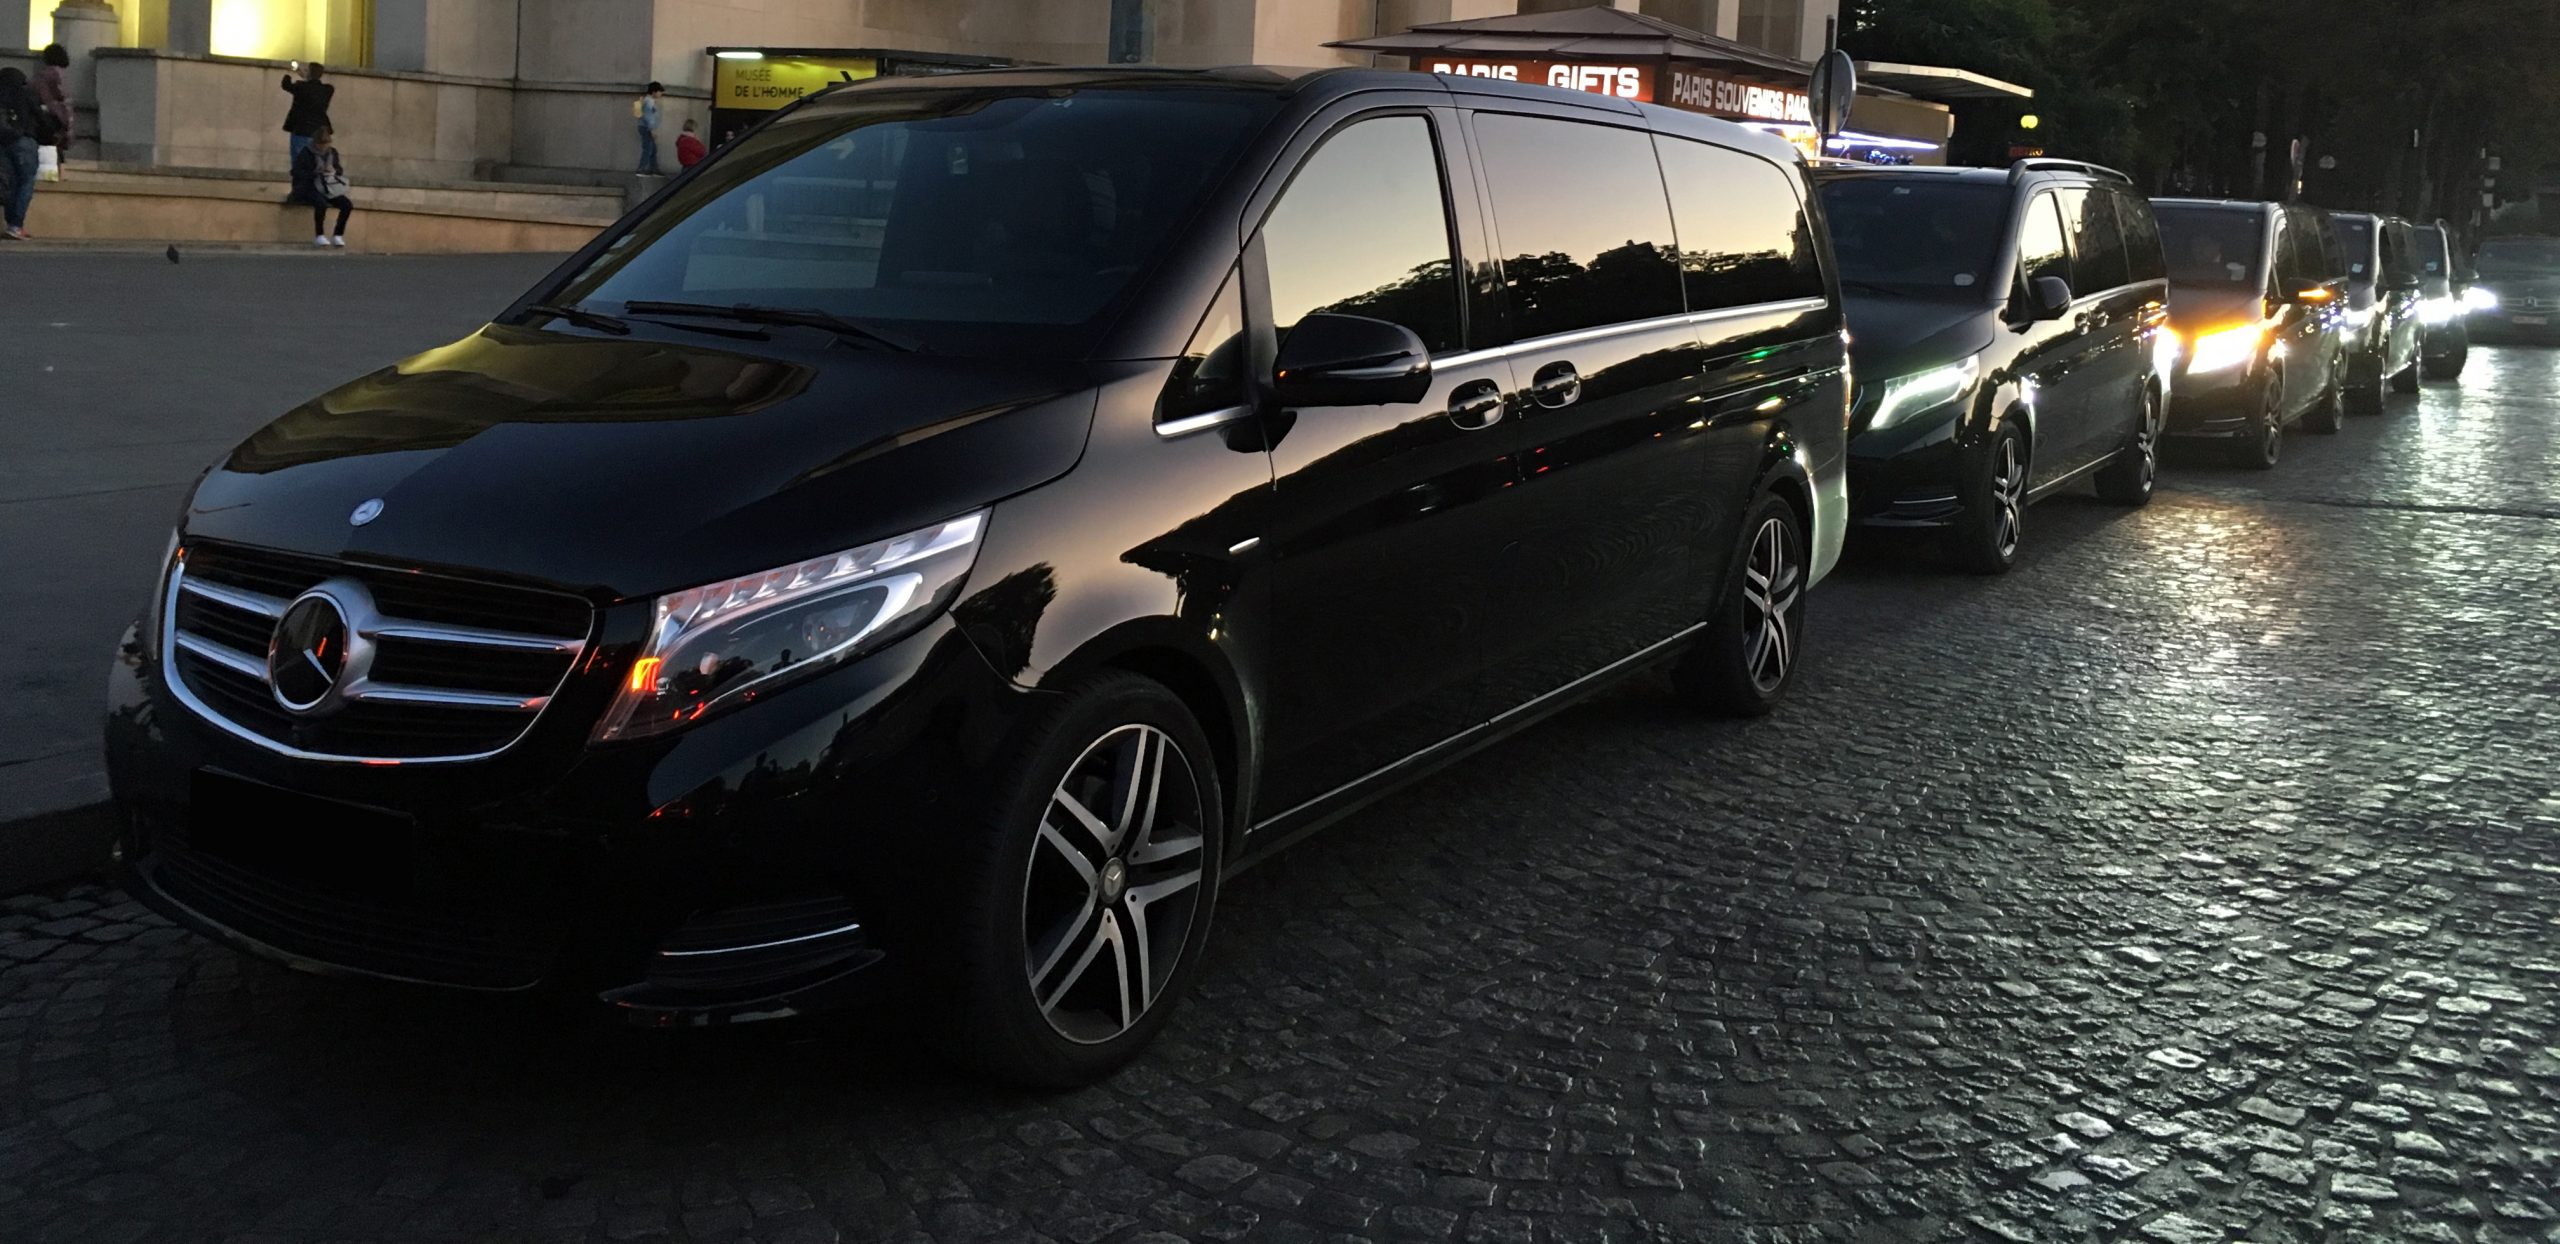 Excellence VIP vous propose des minivans Mercedes Classe V pour vos déplacements de groupes et délégations officielles.